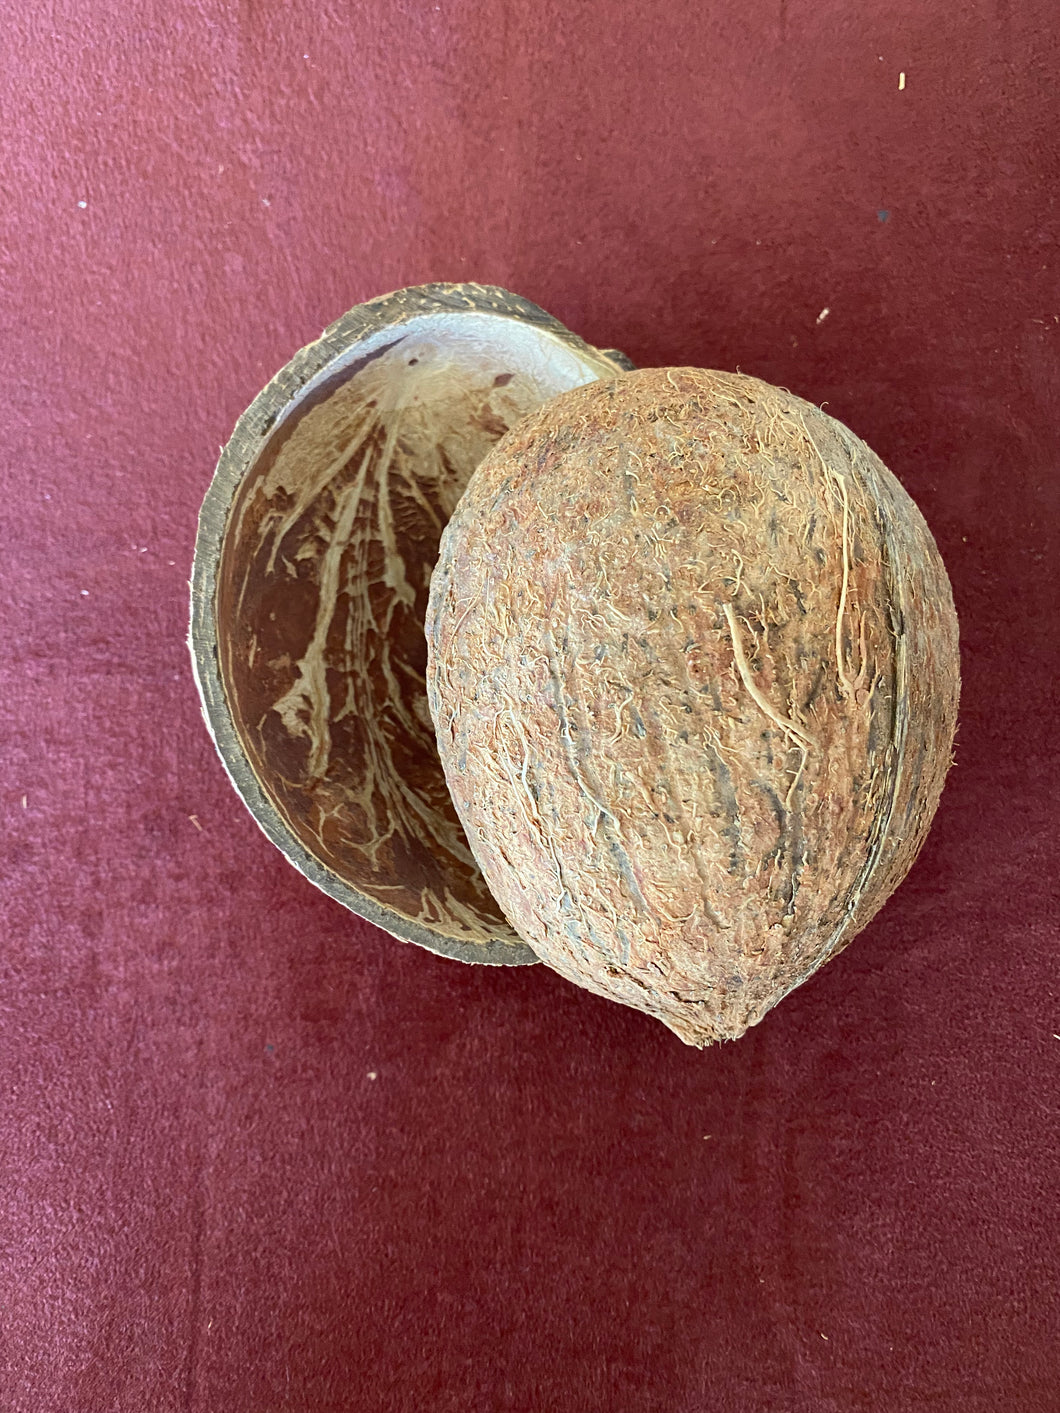 Coconut Half